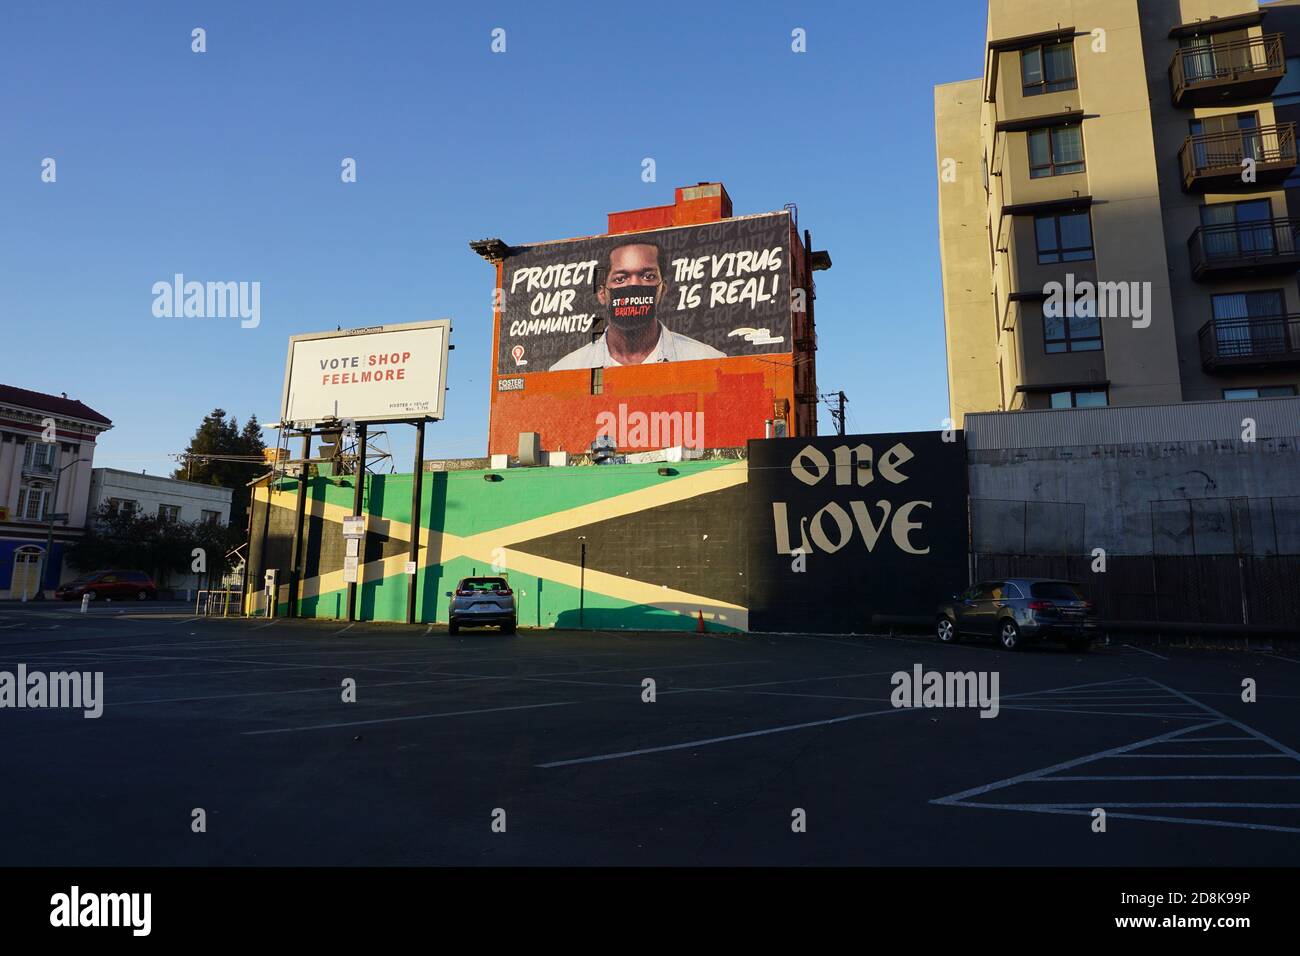 Plakatwände in der Innenstadt von Oakland, CA, USA. Plakatwand für schwarze Gemeinschaft, um covid öffentliches Gesundheitsbewusstsein zu erhöhen. Schwarze Leben Sind Wichtig. Virus ist real. Stockfoto